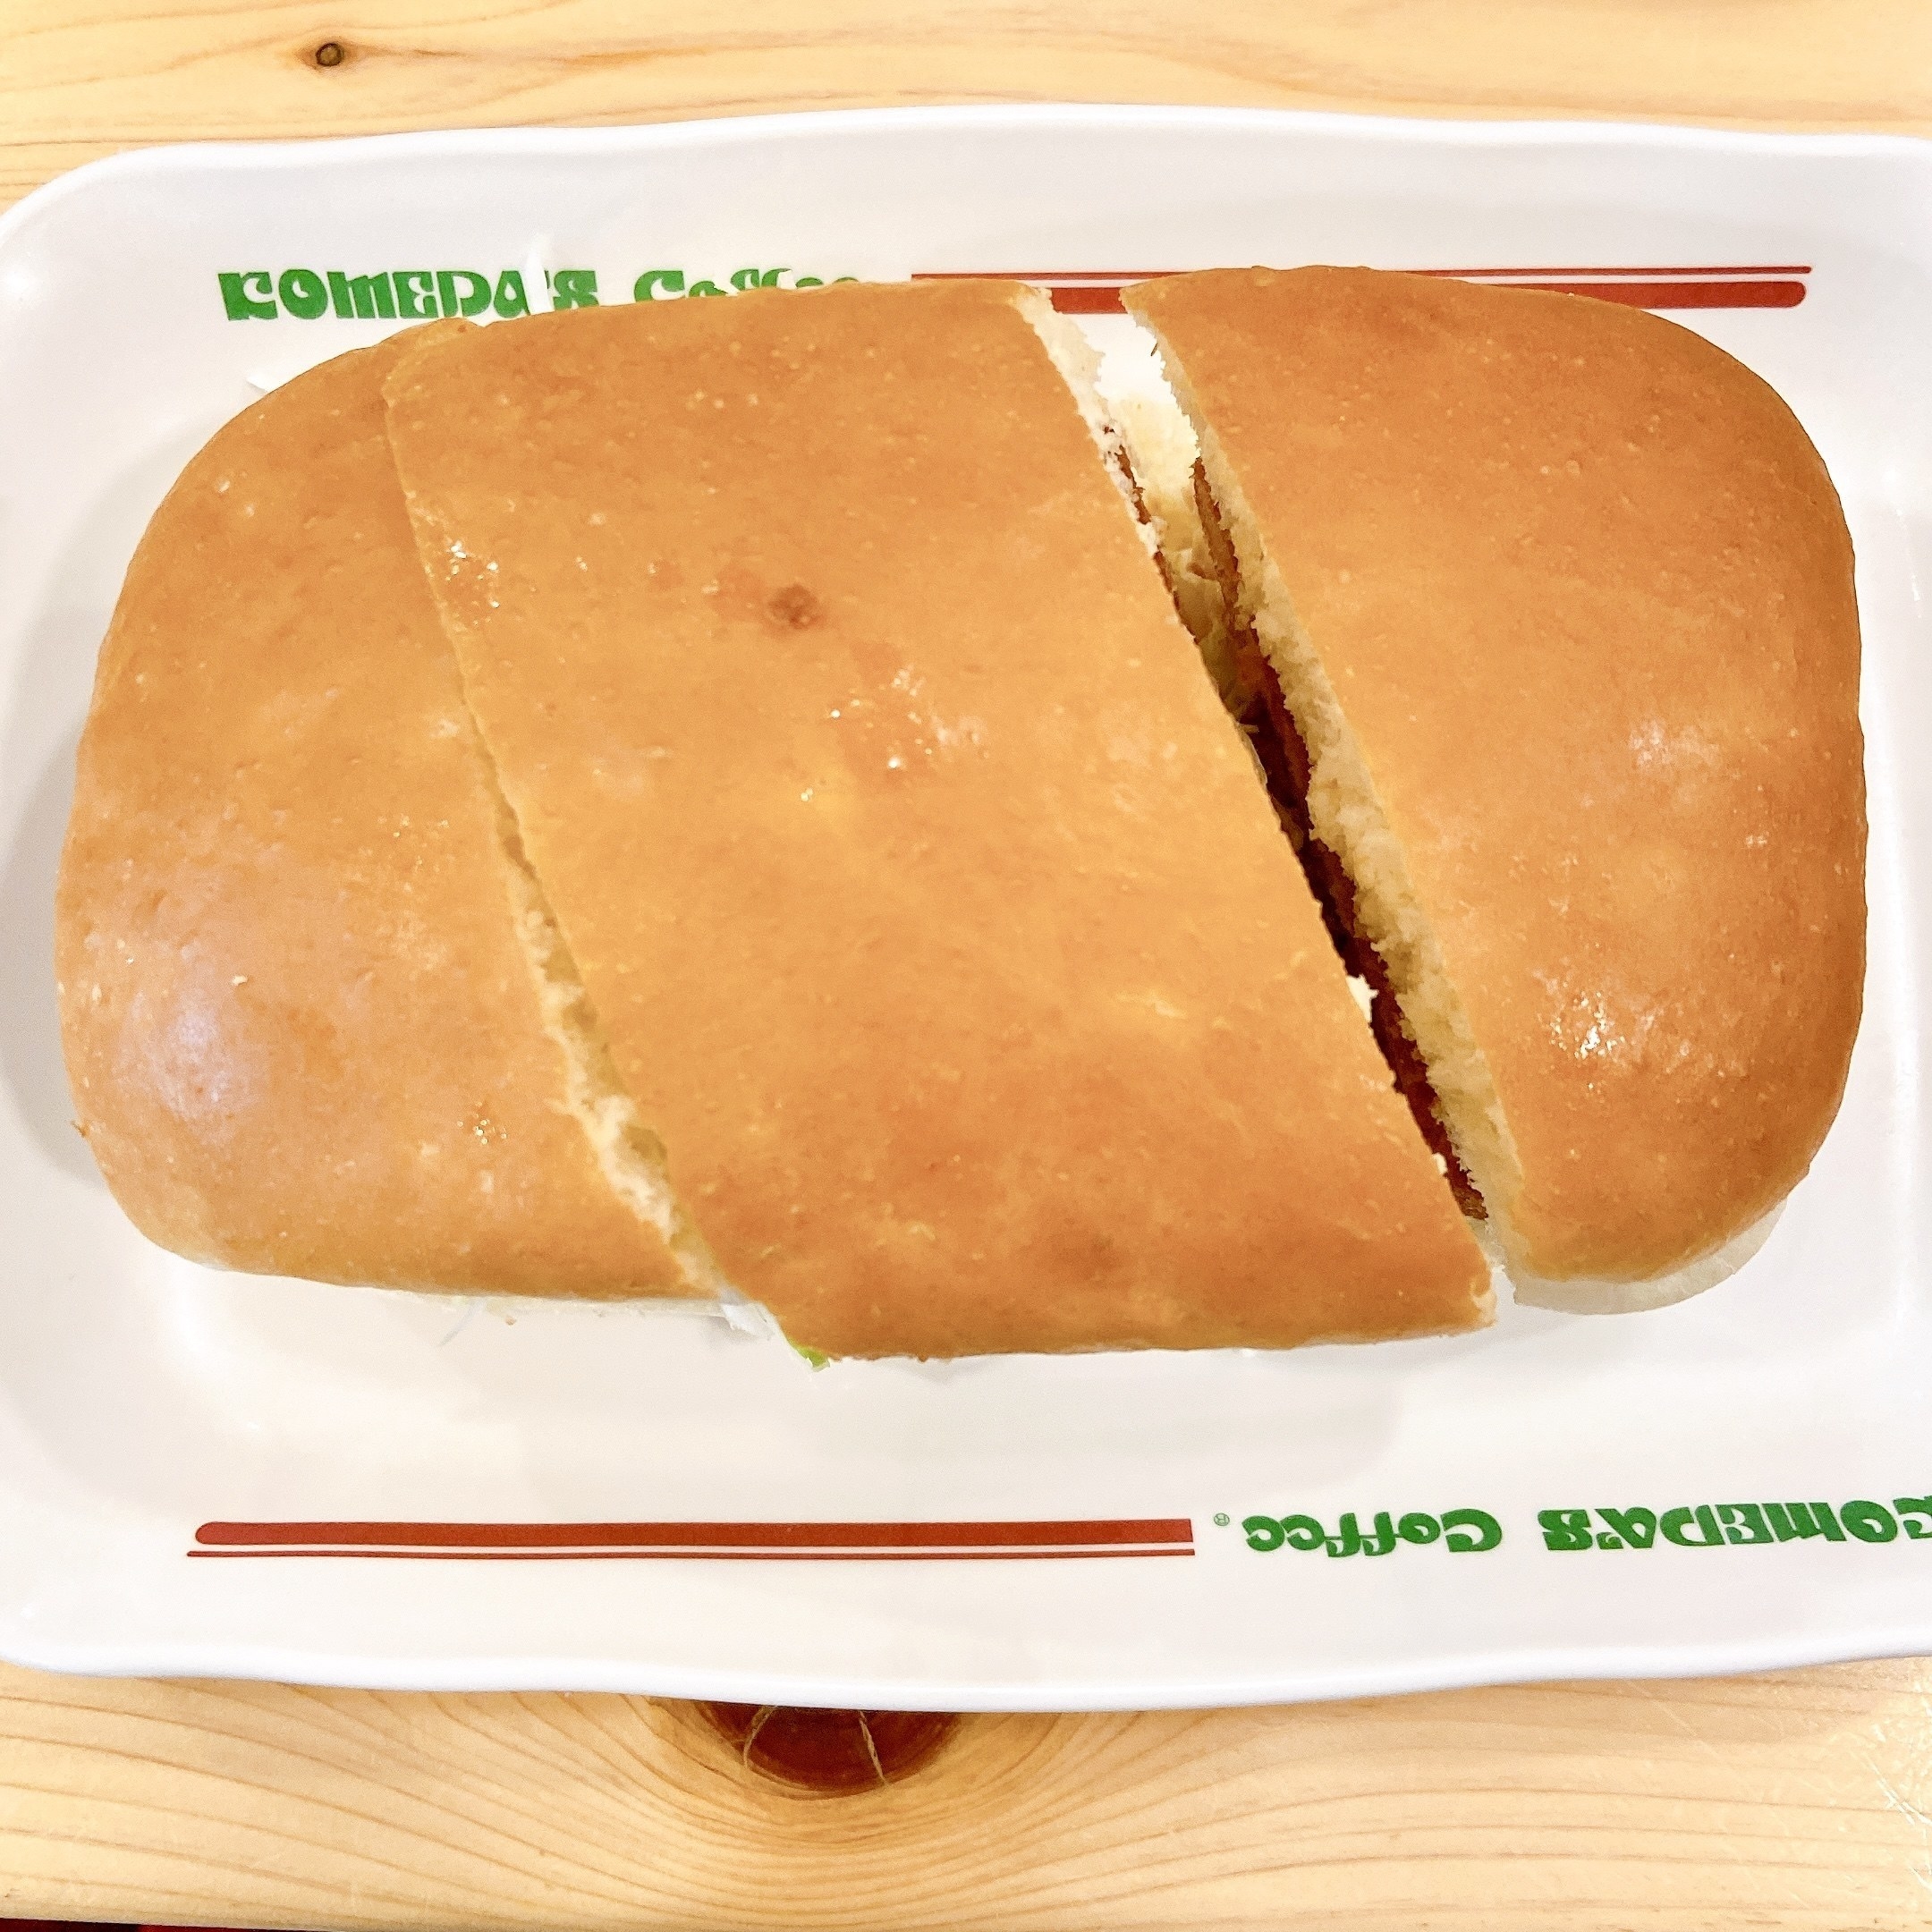 コメダ珈琲店のオススメのカツパン「エビカツパン」